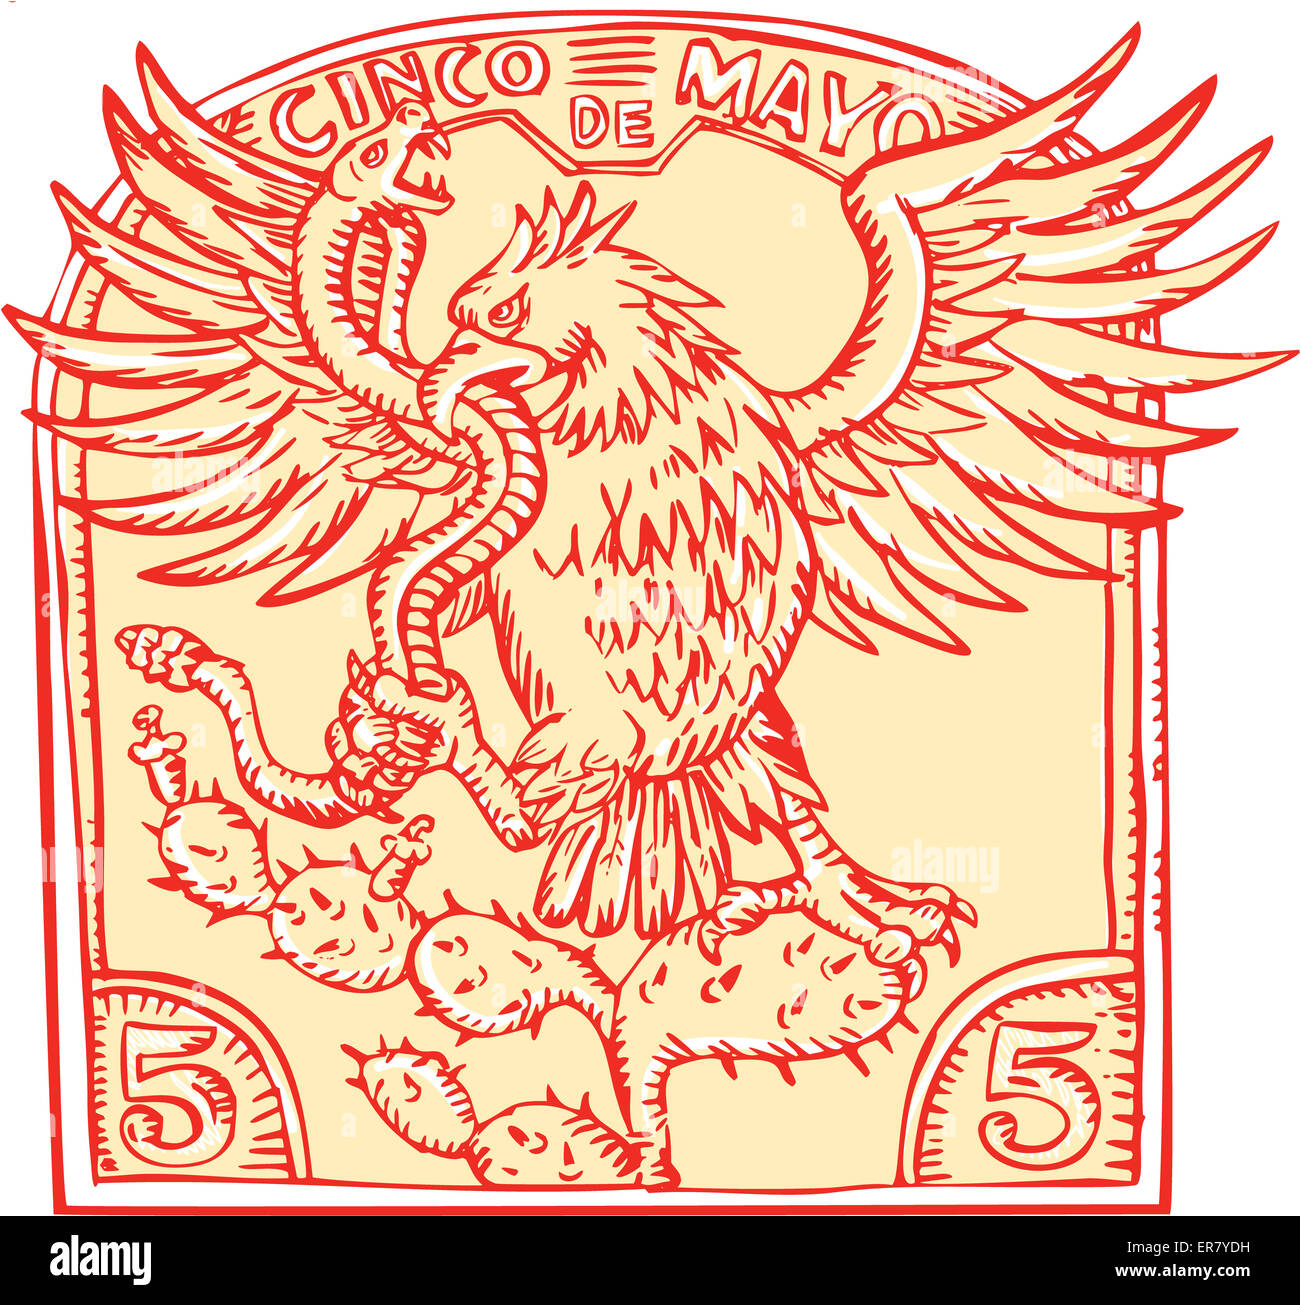 Aguafuerte grabado estilo artesanal mexicano ilustración de un águila  devorando una serpiente traqueteo donde se posan sobre el nopal dentro de  cresta invertida con palabras el Cinco de Mayo Fotografía de stock -